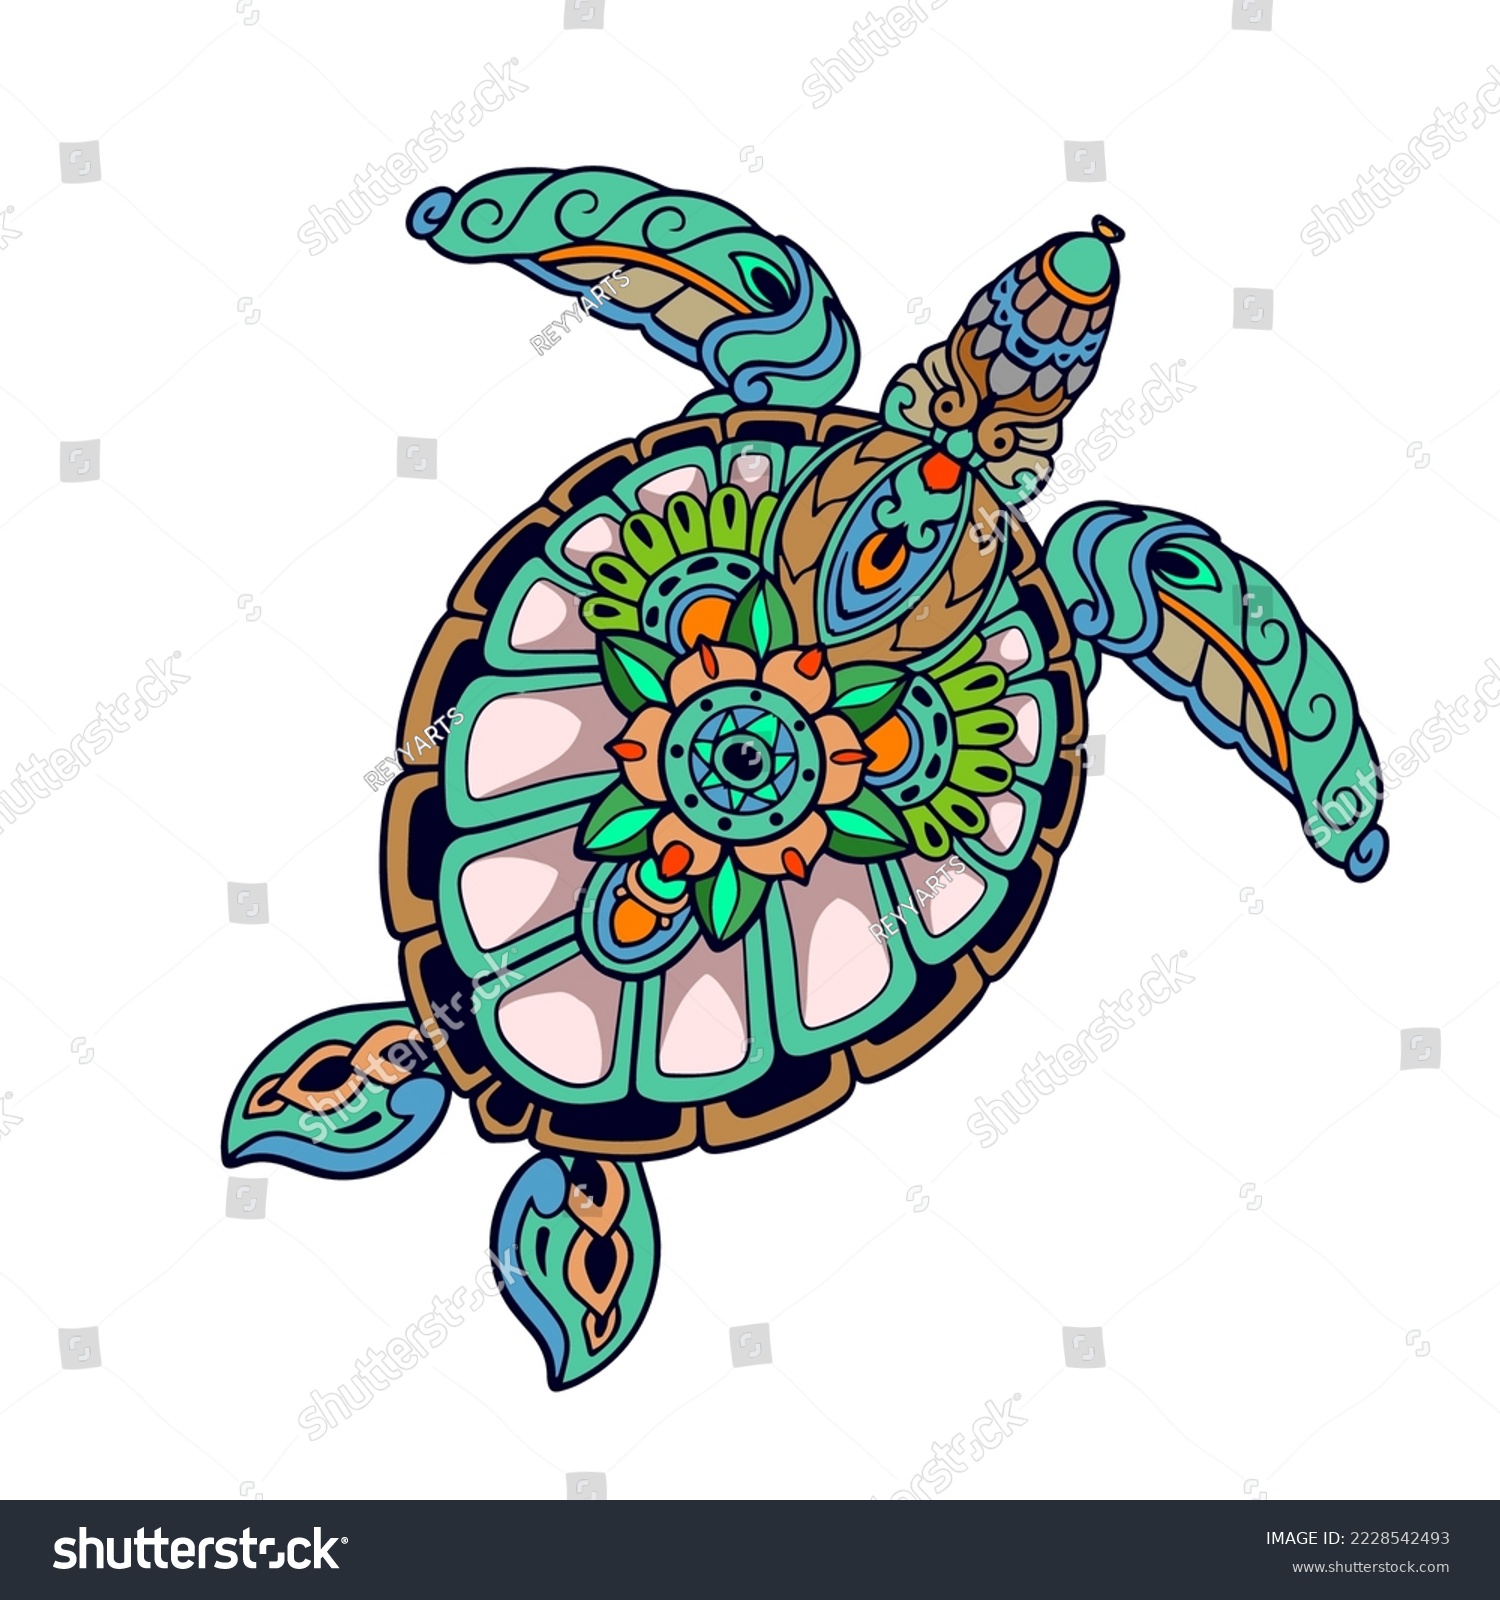 SVG of Colorful Turtle Mandala arts. isolated on white background. svg